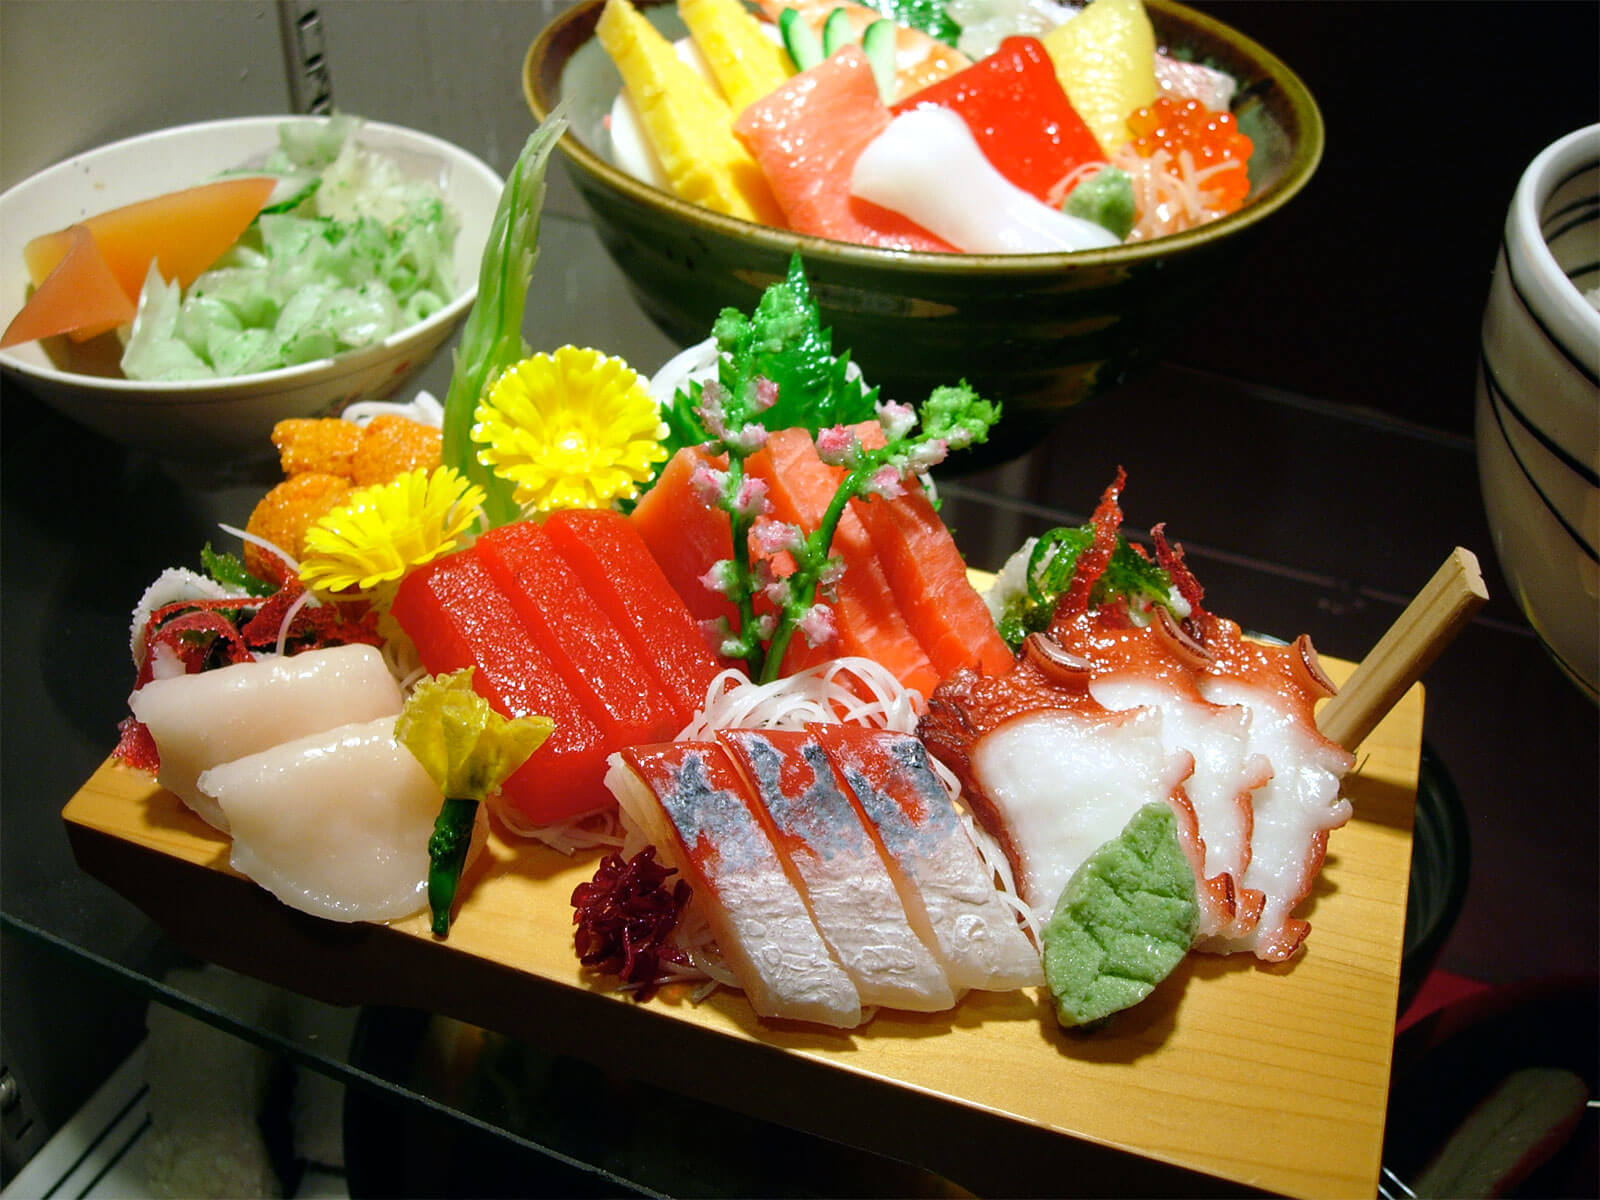 יציאה למסעדות ביפן? – 13 דברים שרצוי מאוד לדעת כי חבל על אי נעימות :)